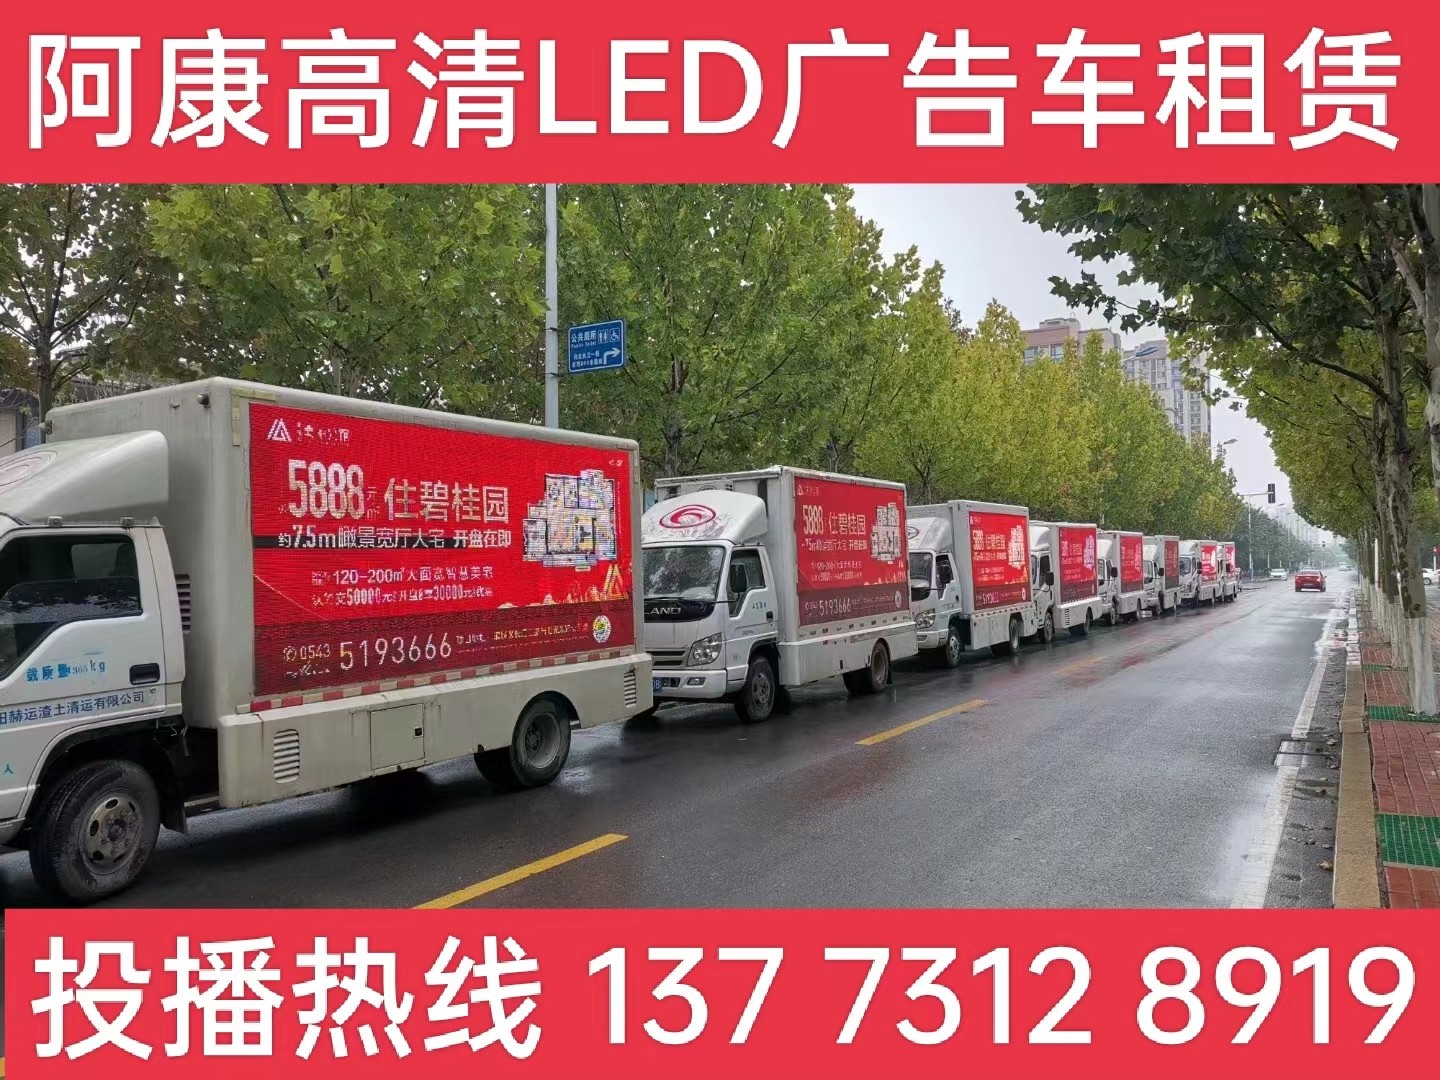 张家港宣传车租赁公司-楼盘LED广告车投放